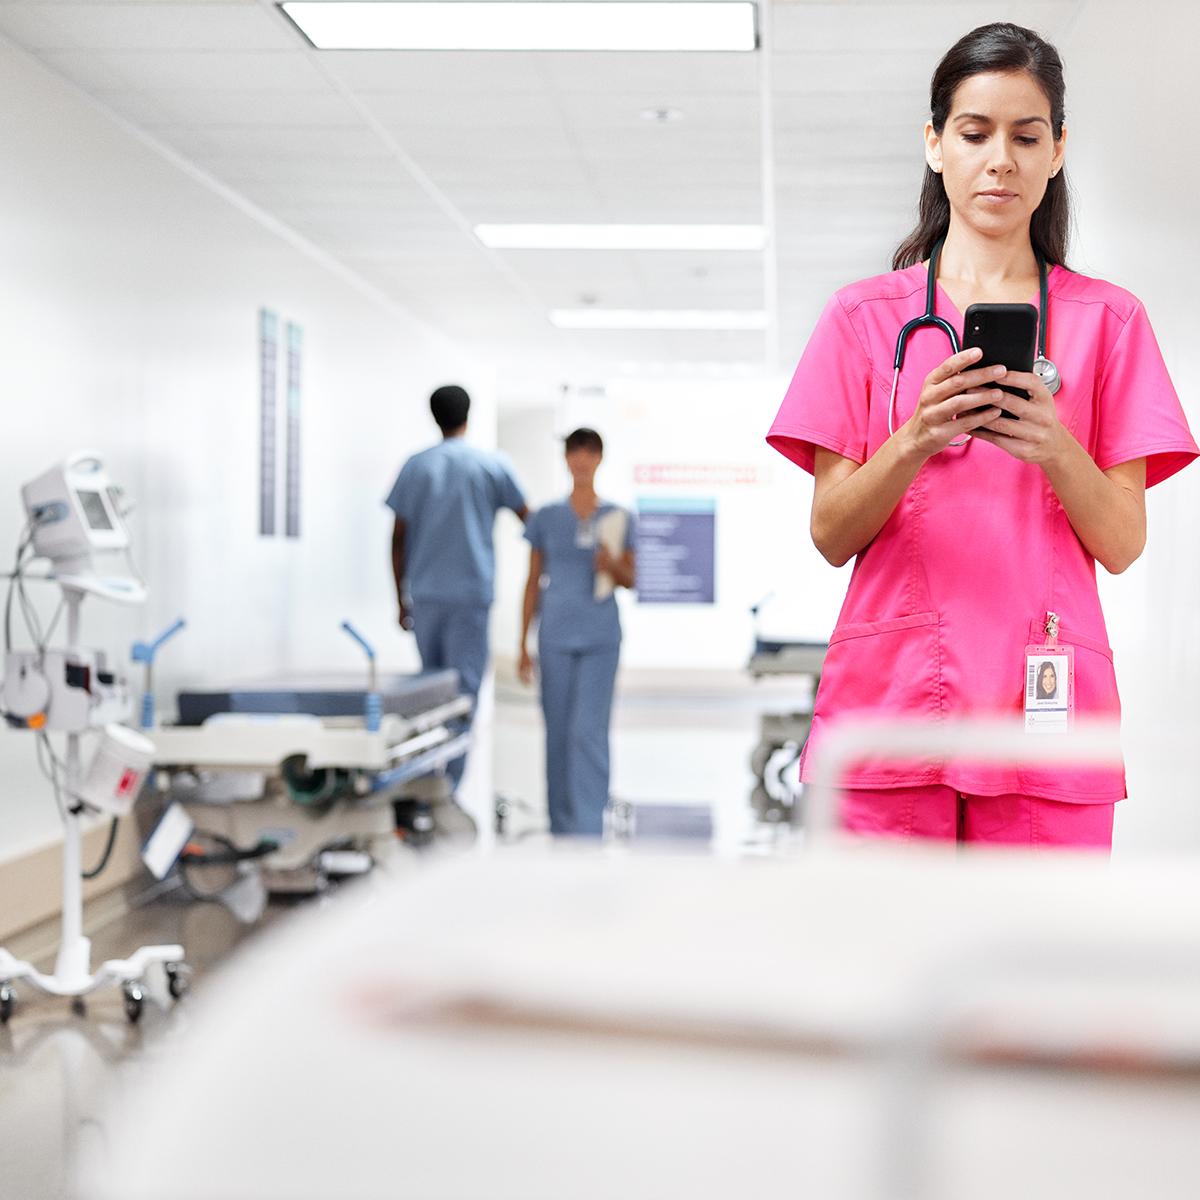 Un clinico controlla il telefono cellulare stando in piedi nel corridoio di un ospedale. Indossa una divisa chirurgica rosa.